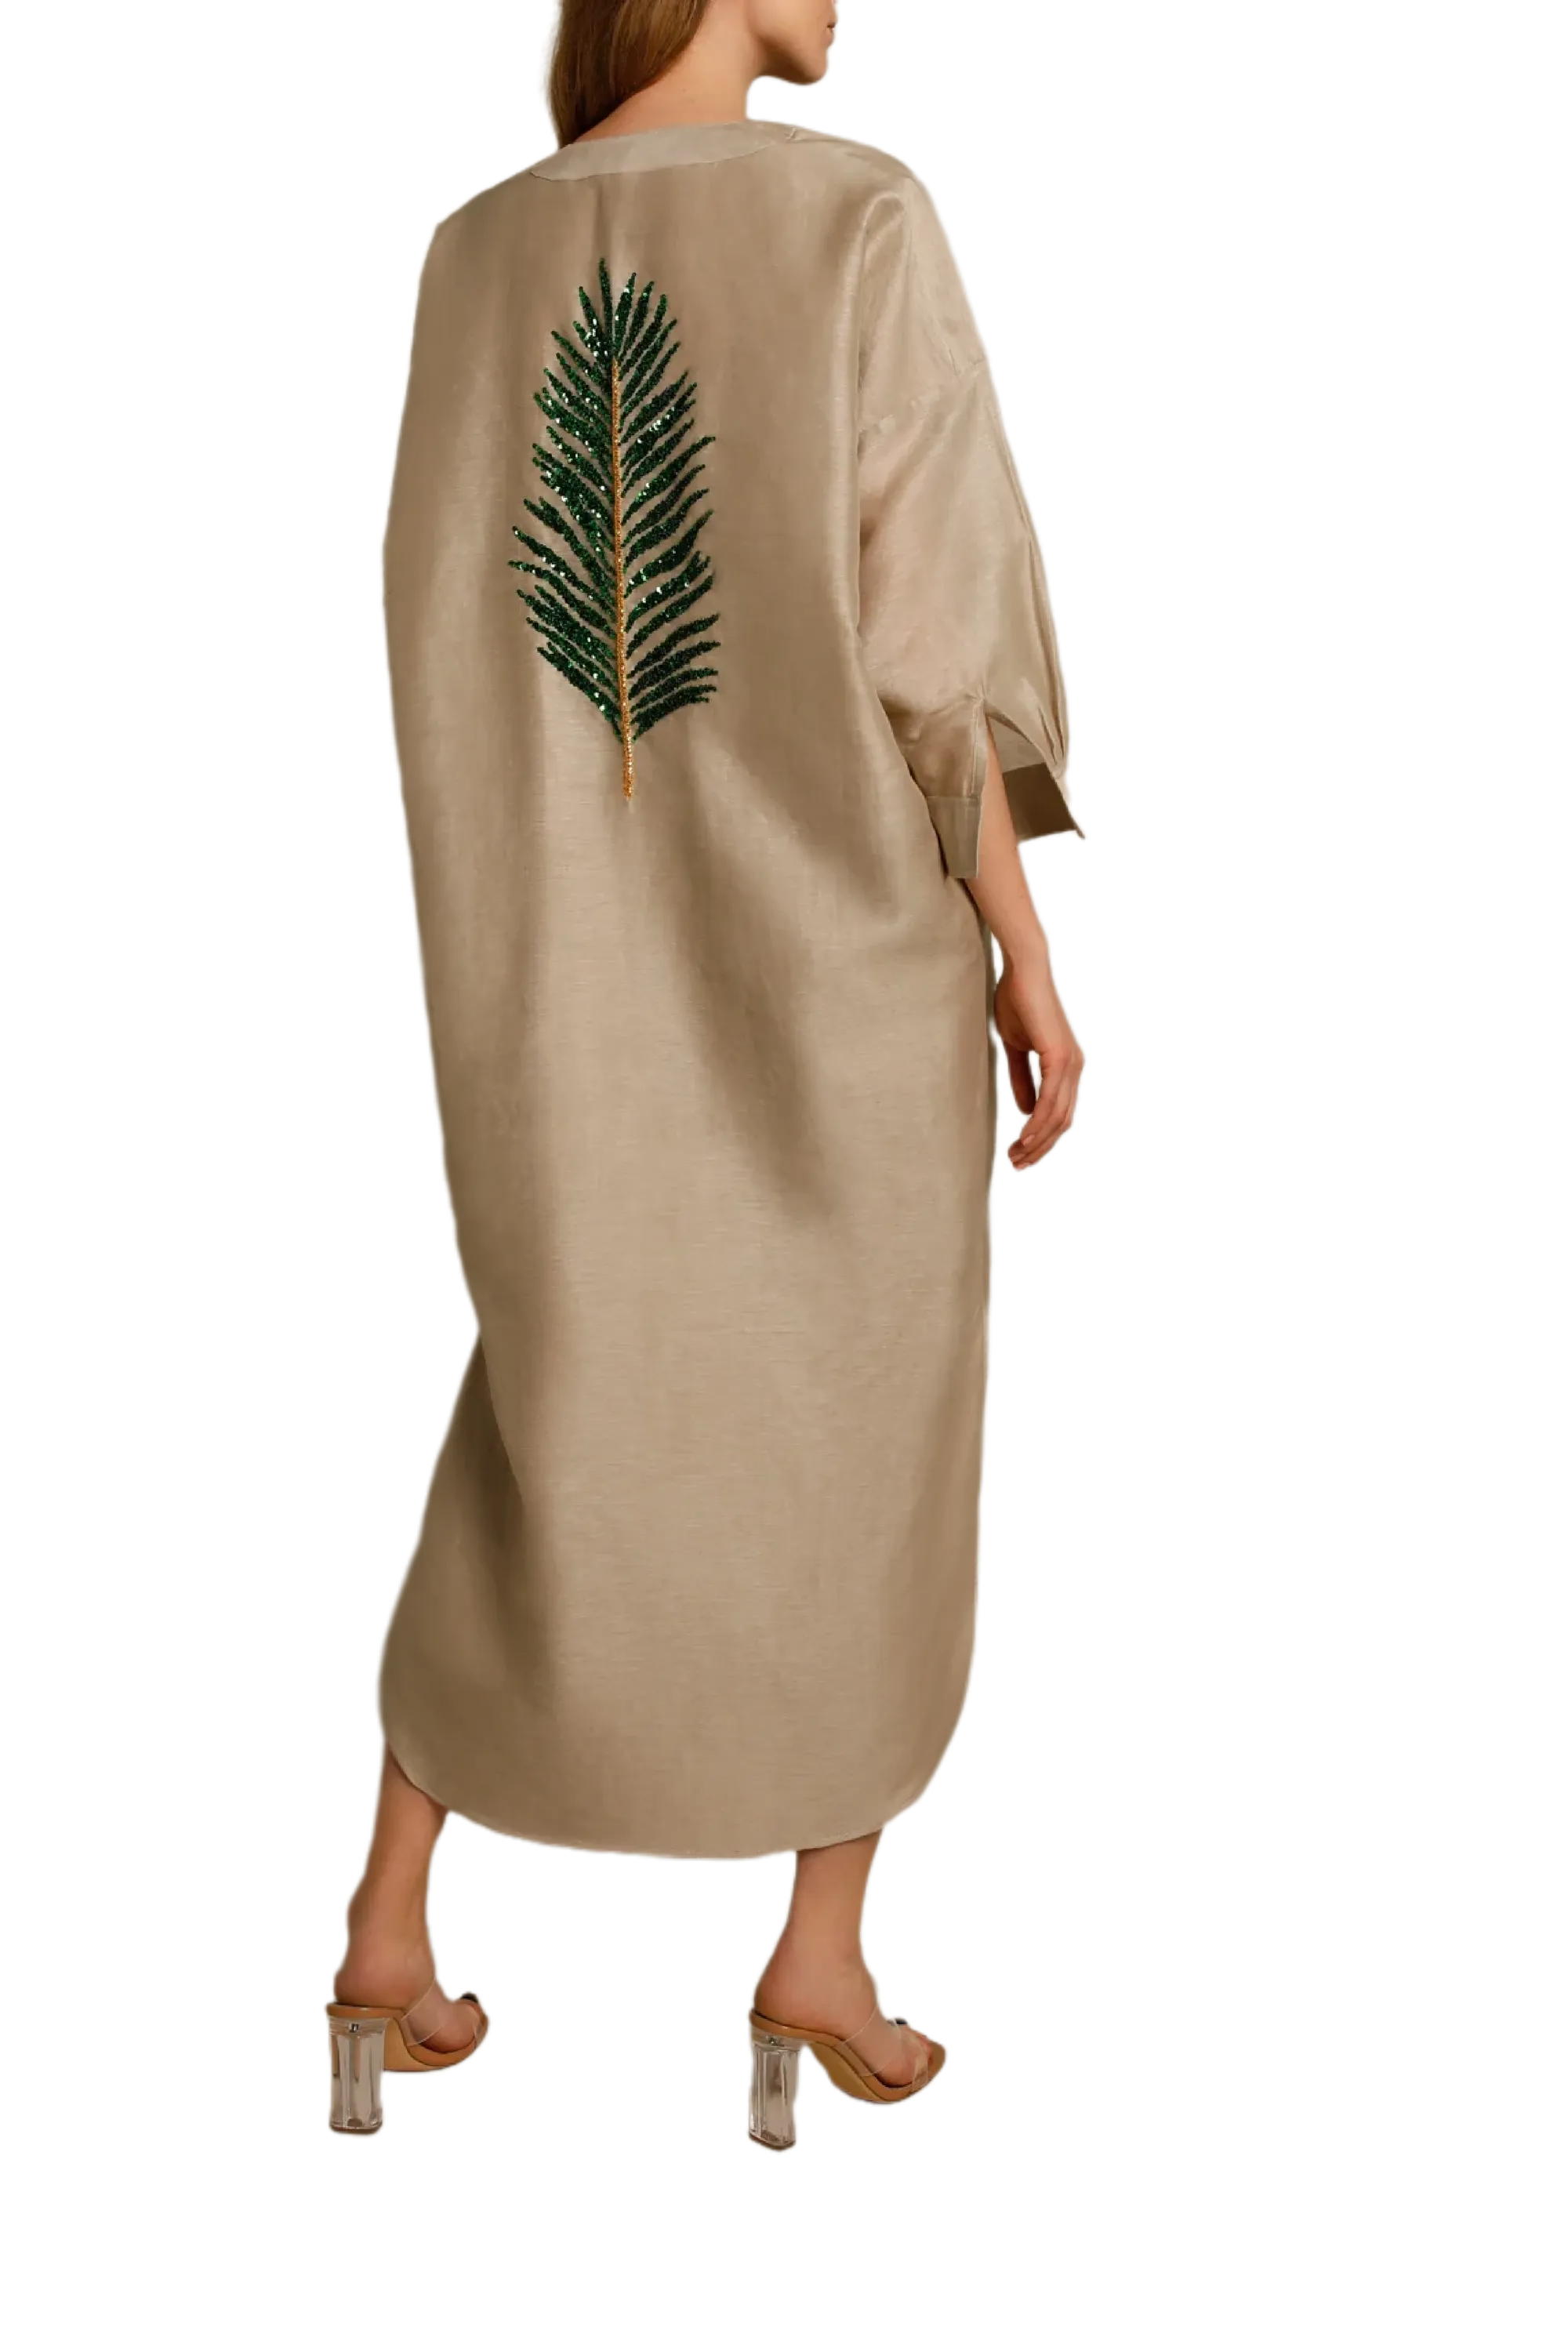 Areka Palm Dress